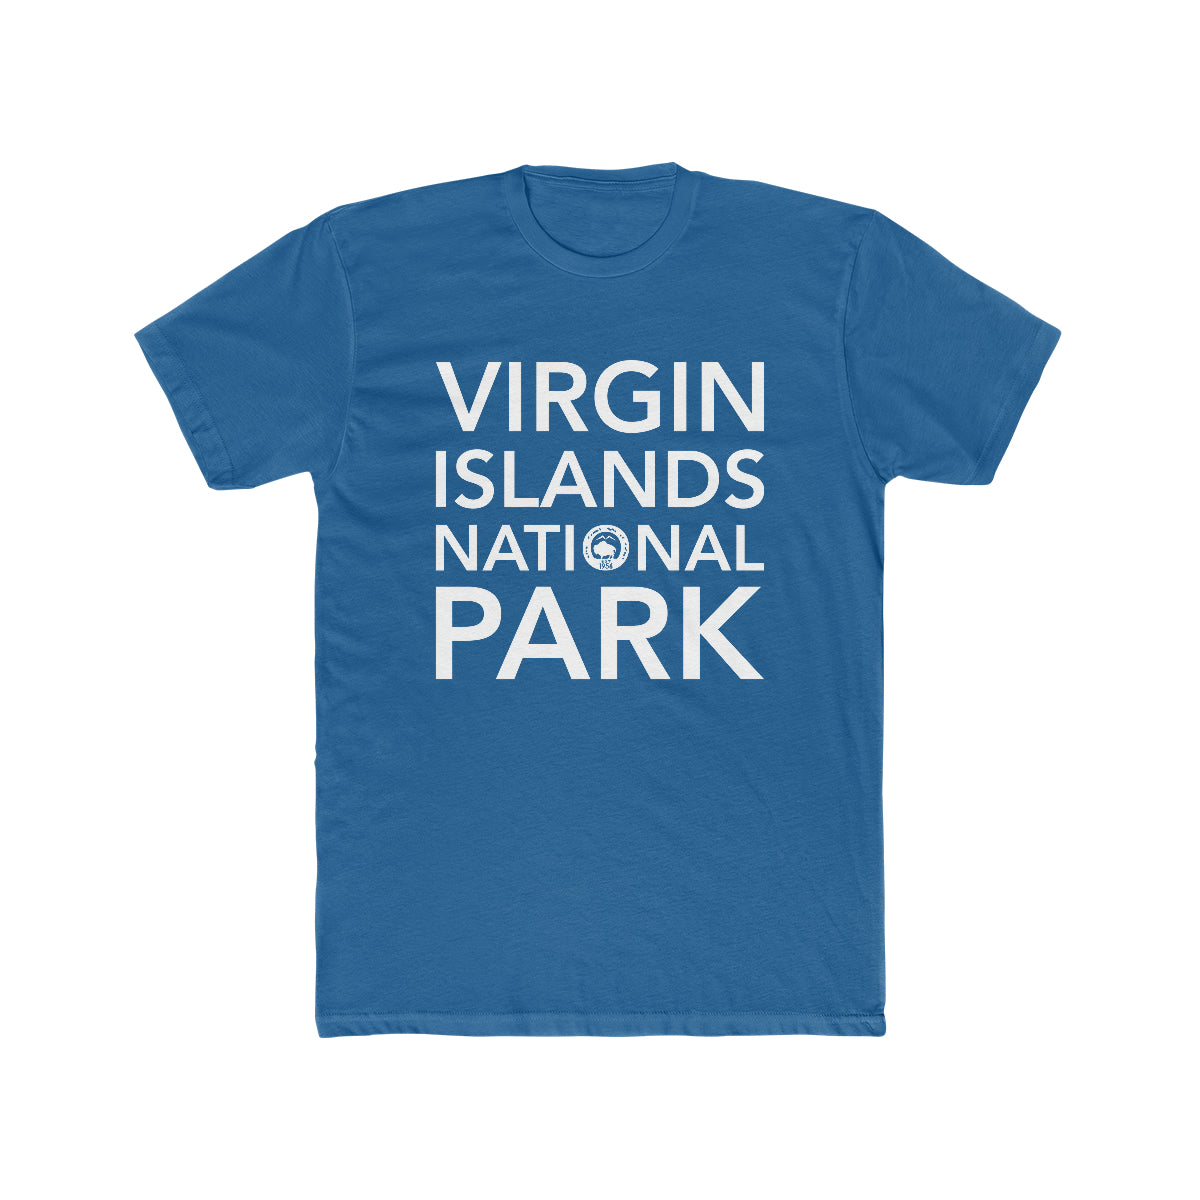 Virgin Islands National Park T-Shirt Block Text